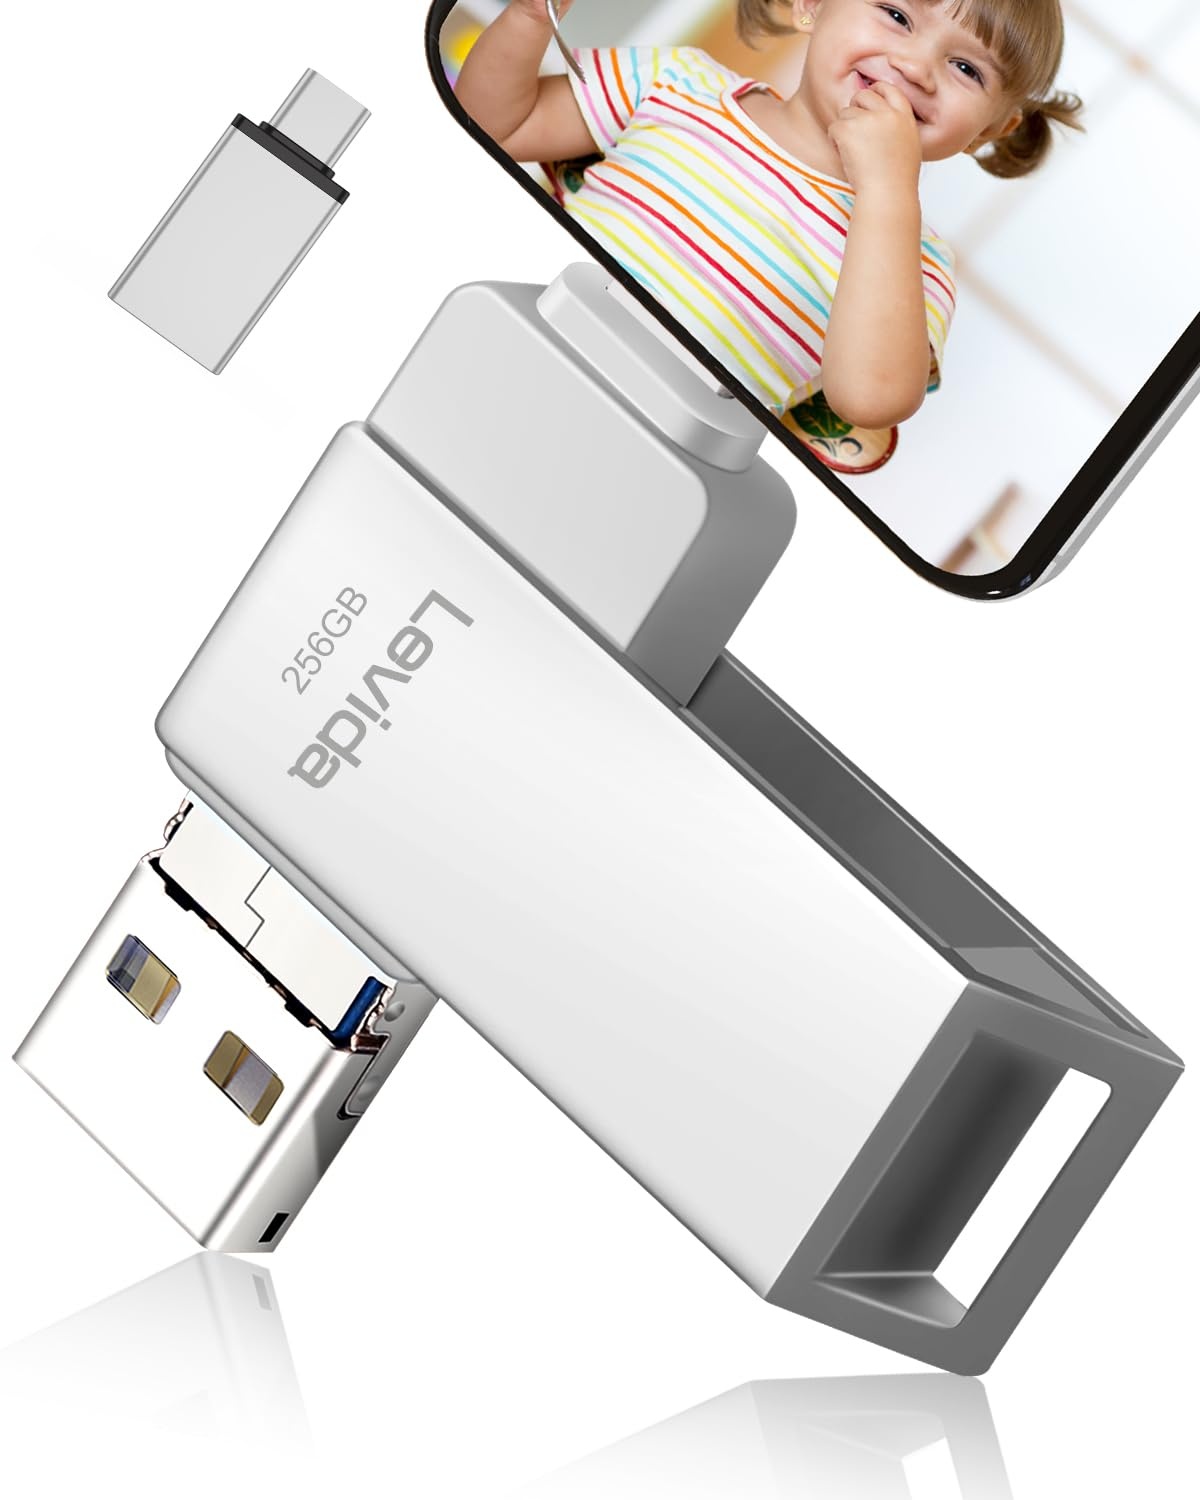 USB Stick 256GB,Levida Speicherstick USB 3.0 Photostick fotostick (Mobiler Speicher,Drehbares Design, Automatisches Backup) für IOS,Phone,Android Handy,Pad, Laptop UND Computer,PC,Silber